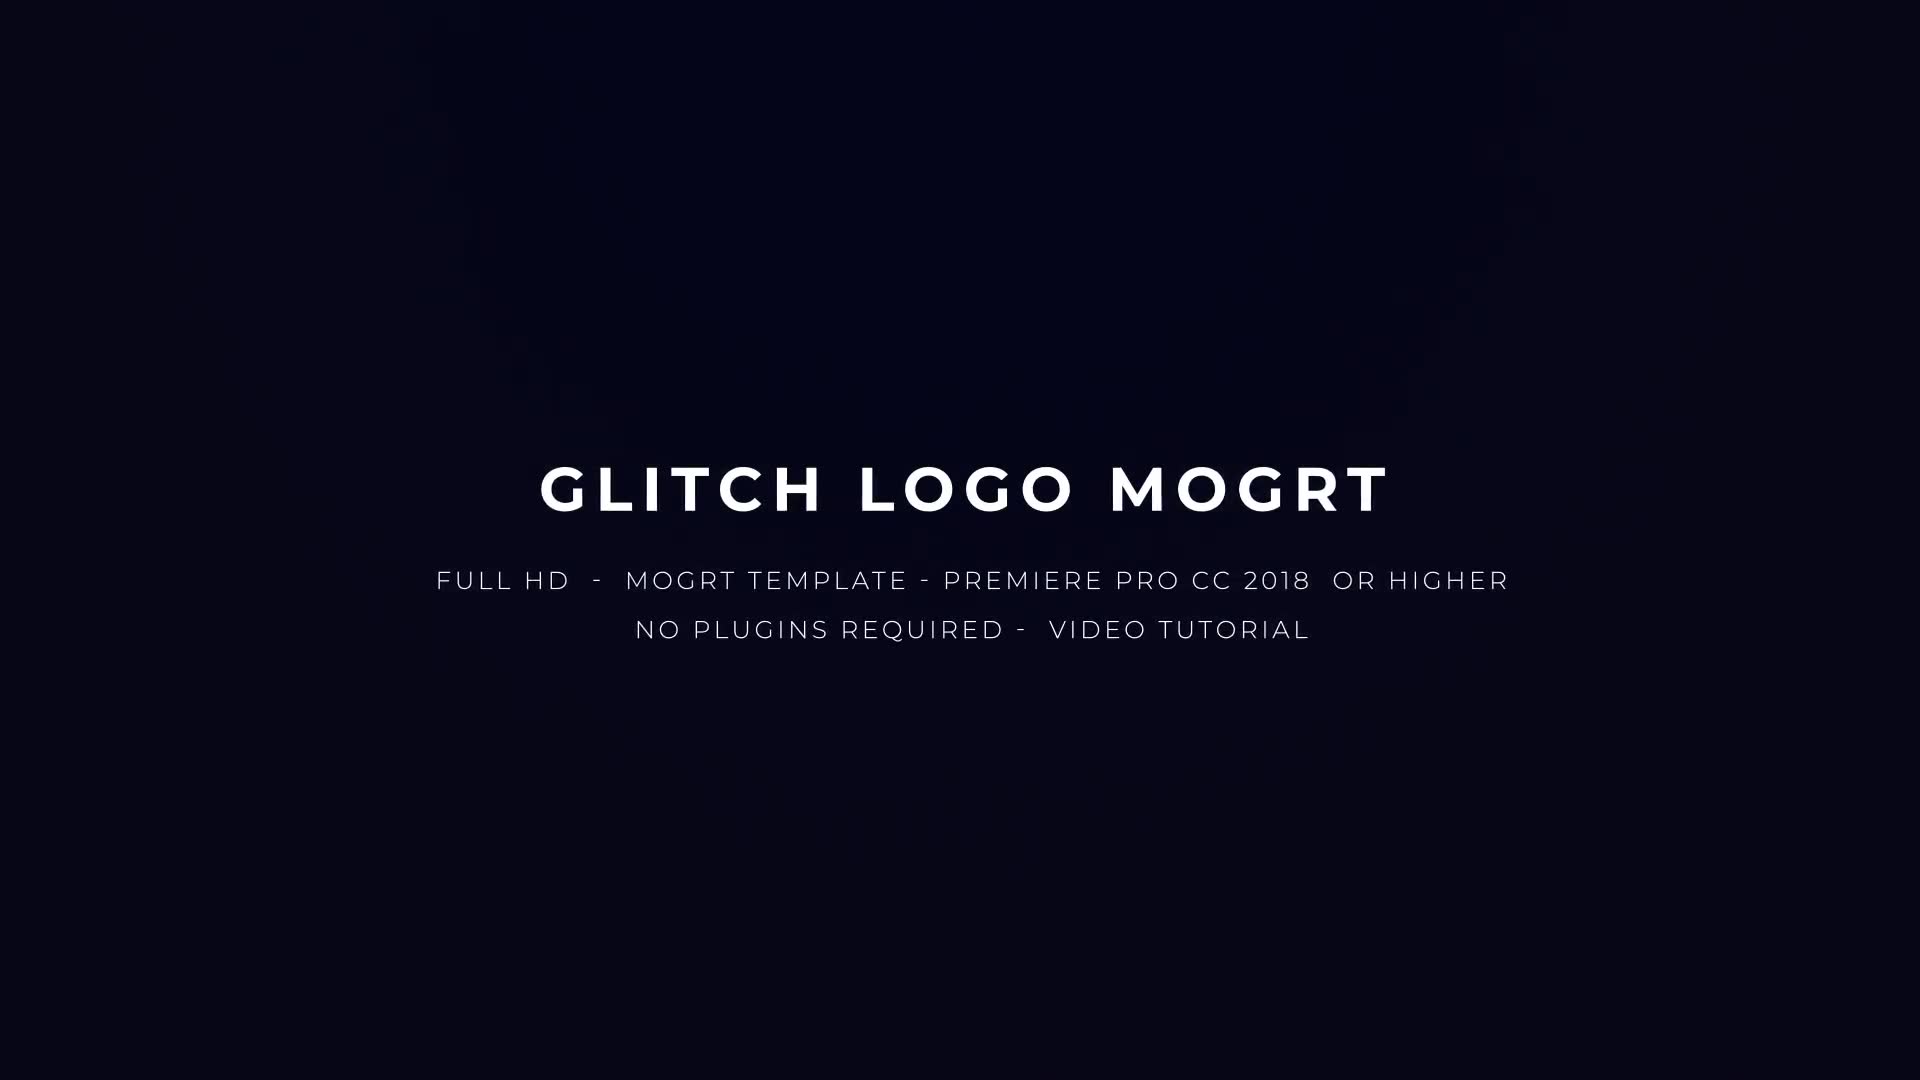 Glitch Logo Mogrt Videohive 22871341 Premiere Pro Image 2